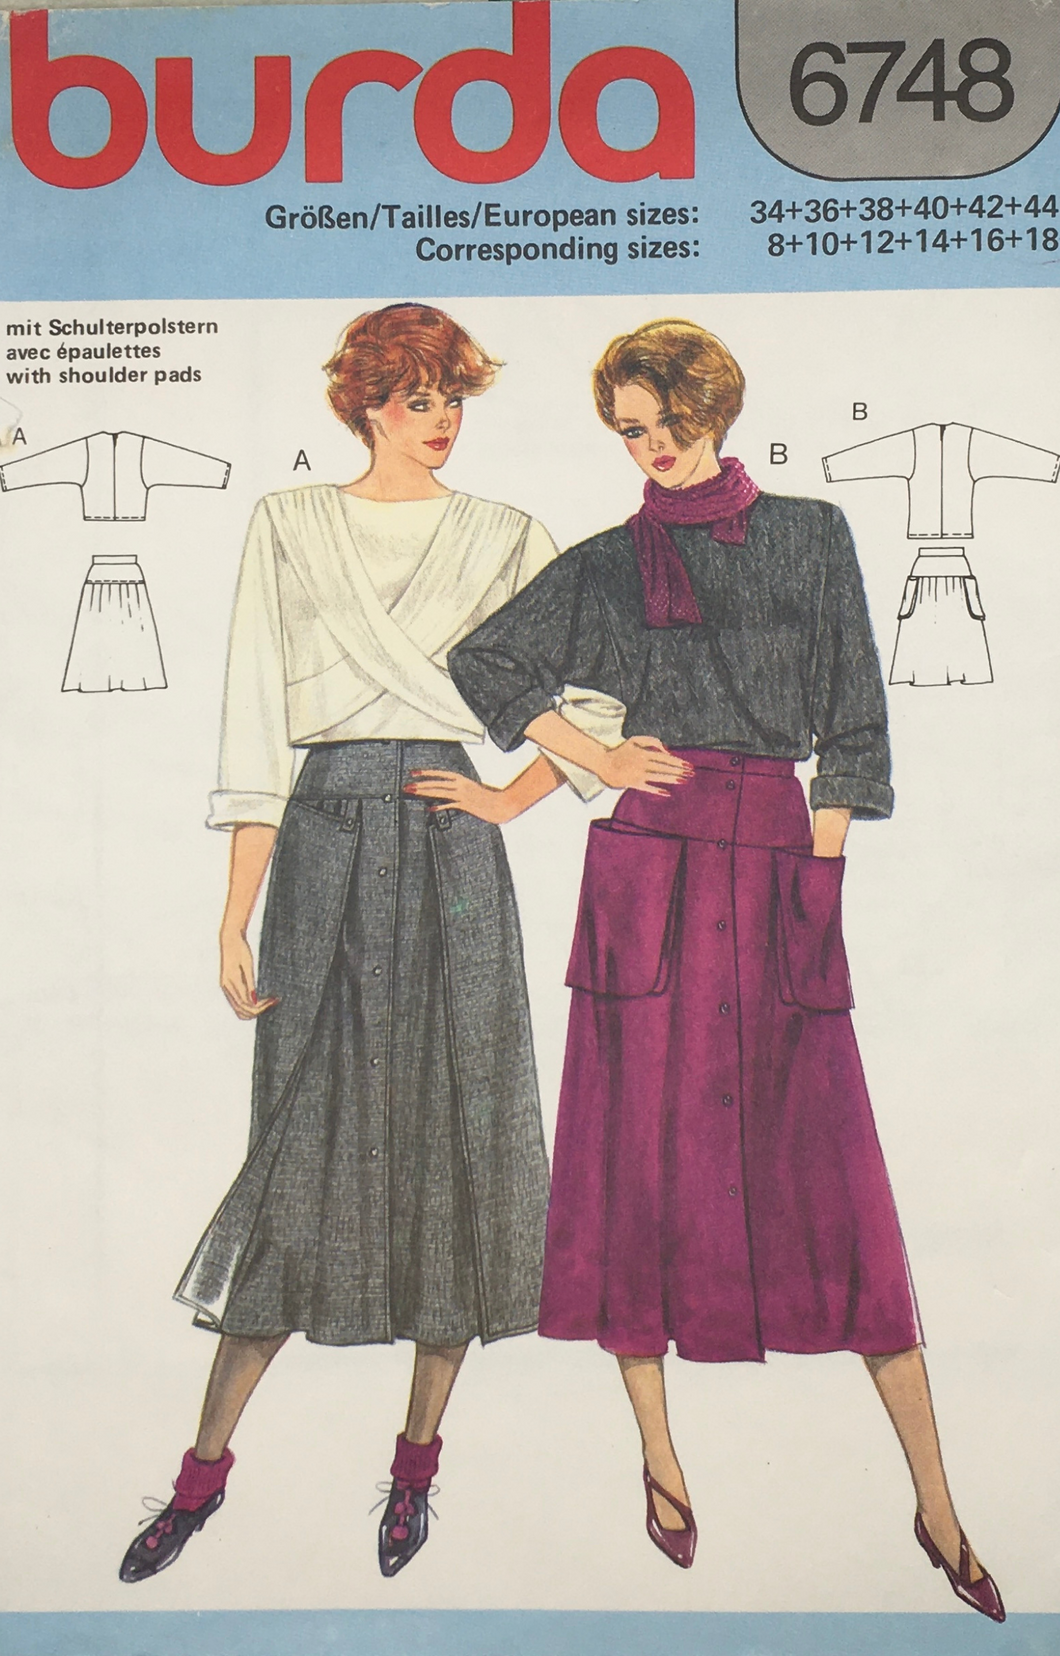 1984 Vintage Sewing Pattern: Burda 6748